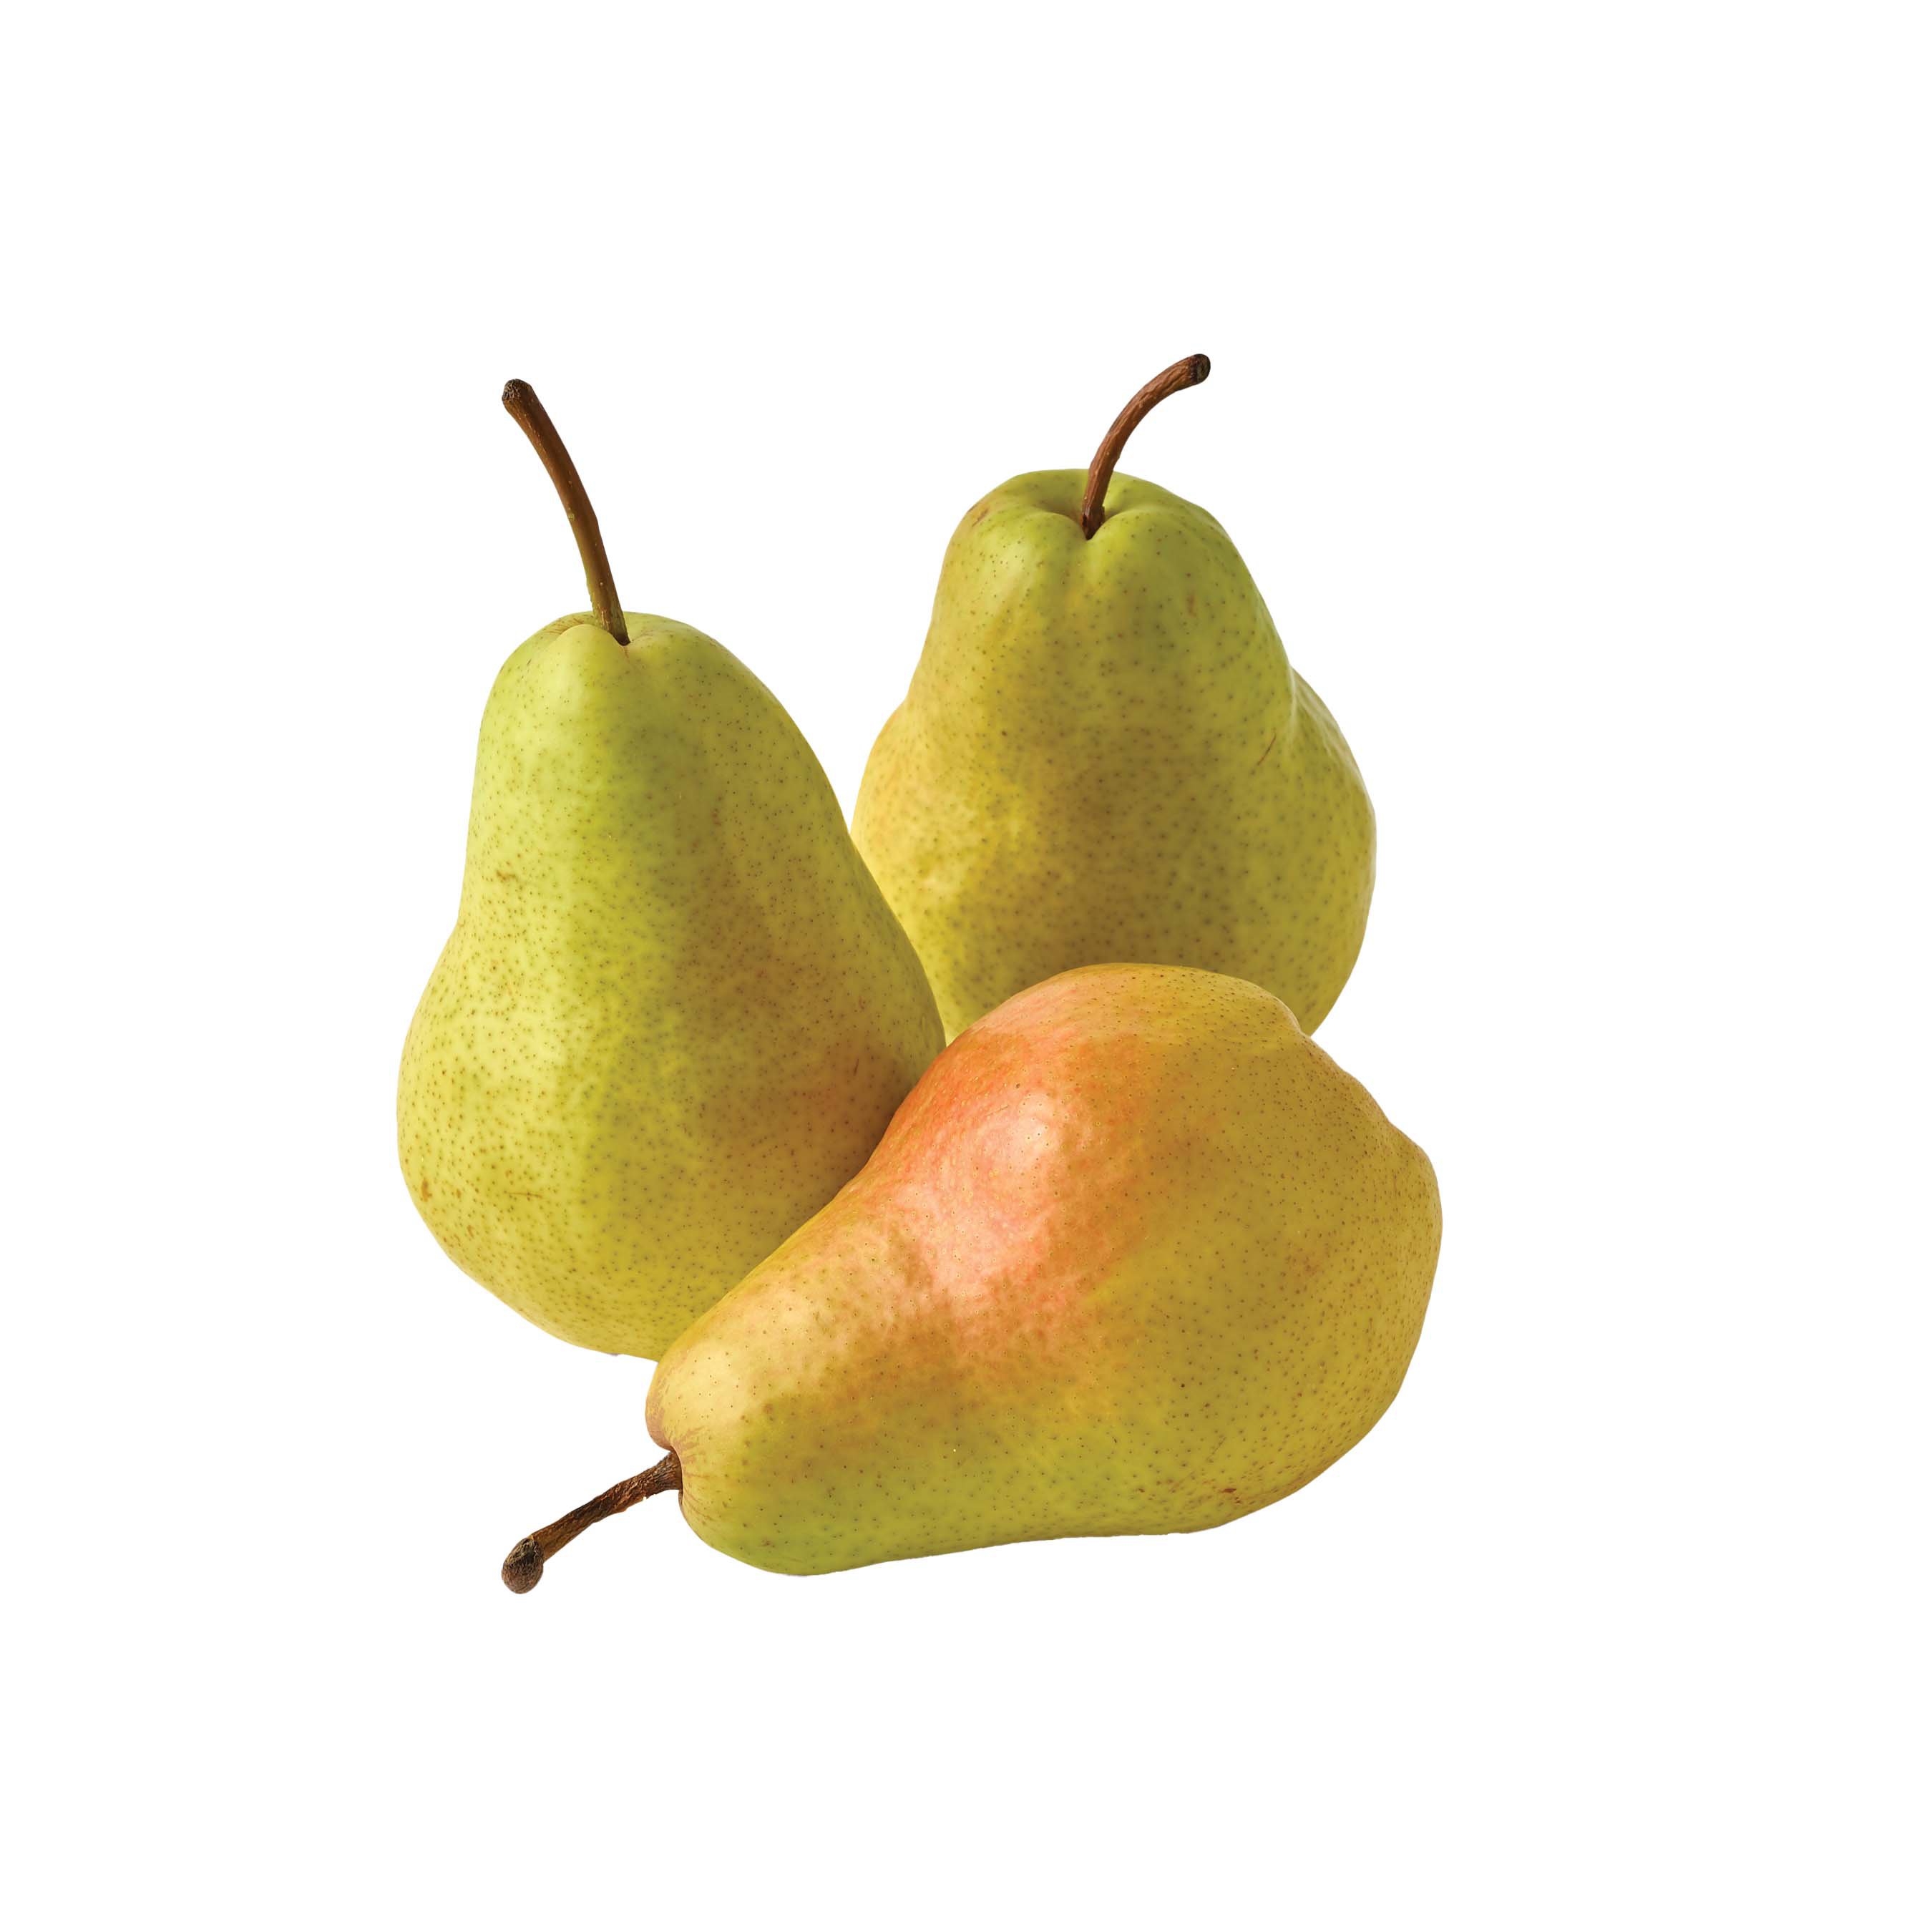 Fresh Green Bartlett Pears ‑ Shop Pears at H‑E‑B